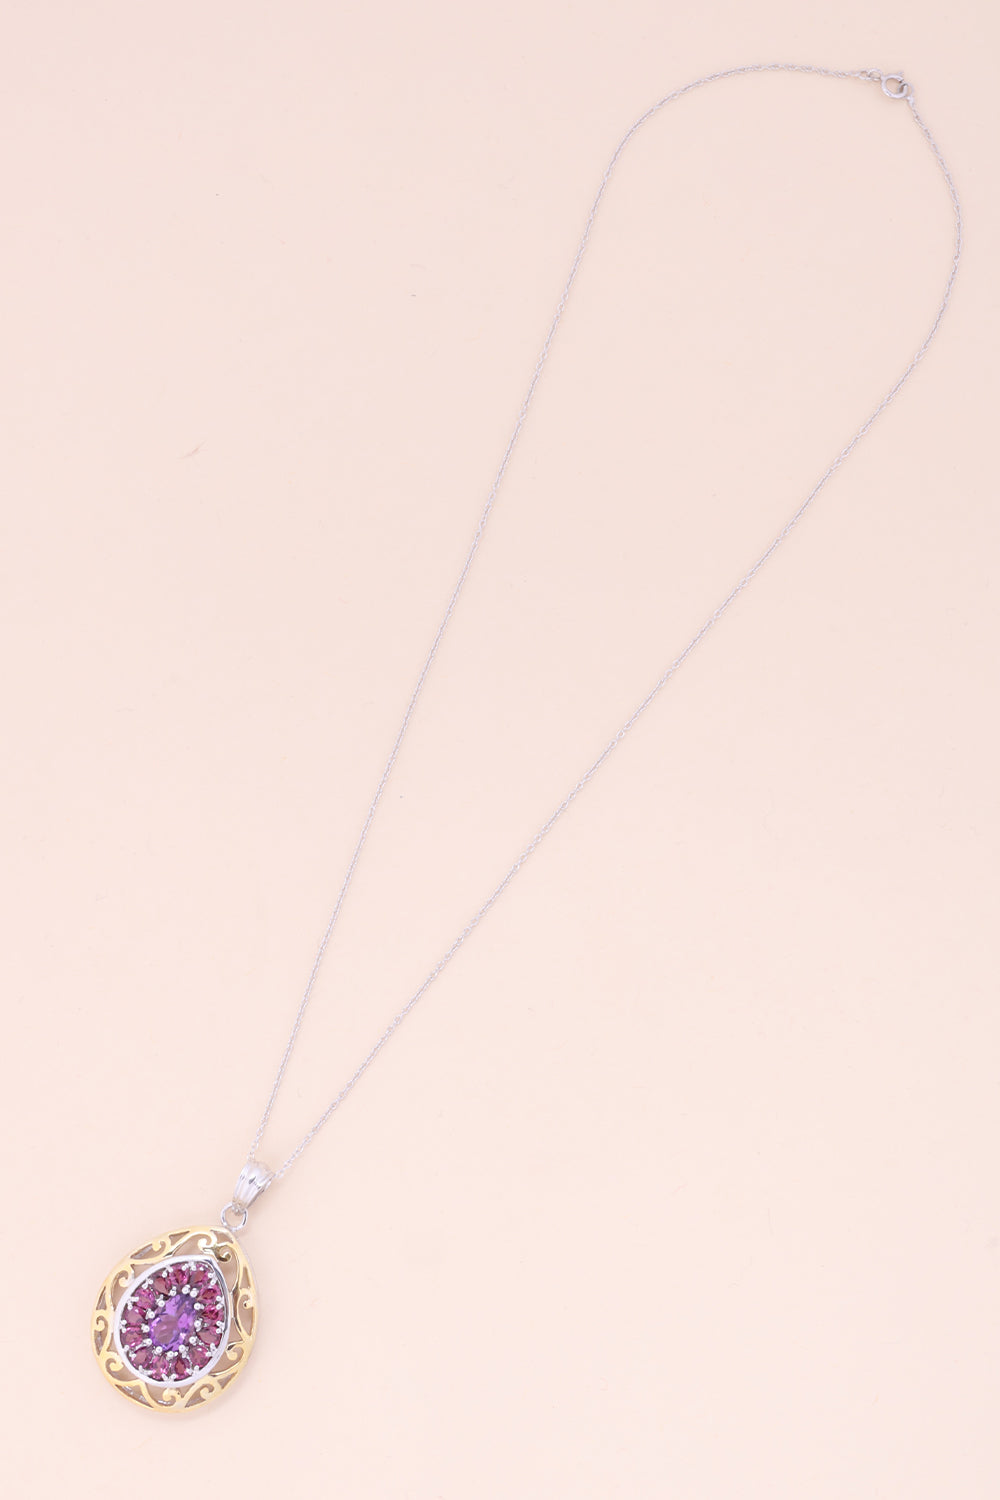 Amethyst & Rhodolite Silver Necklace Pendant Chain-Avishya